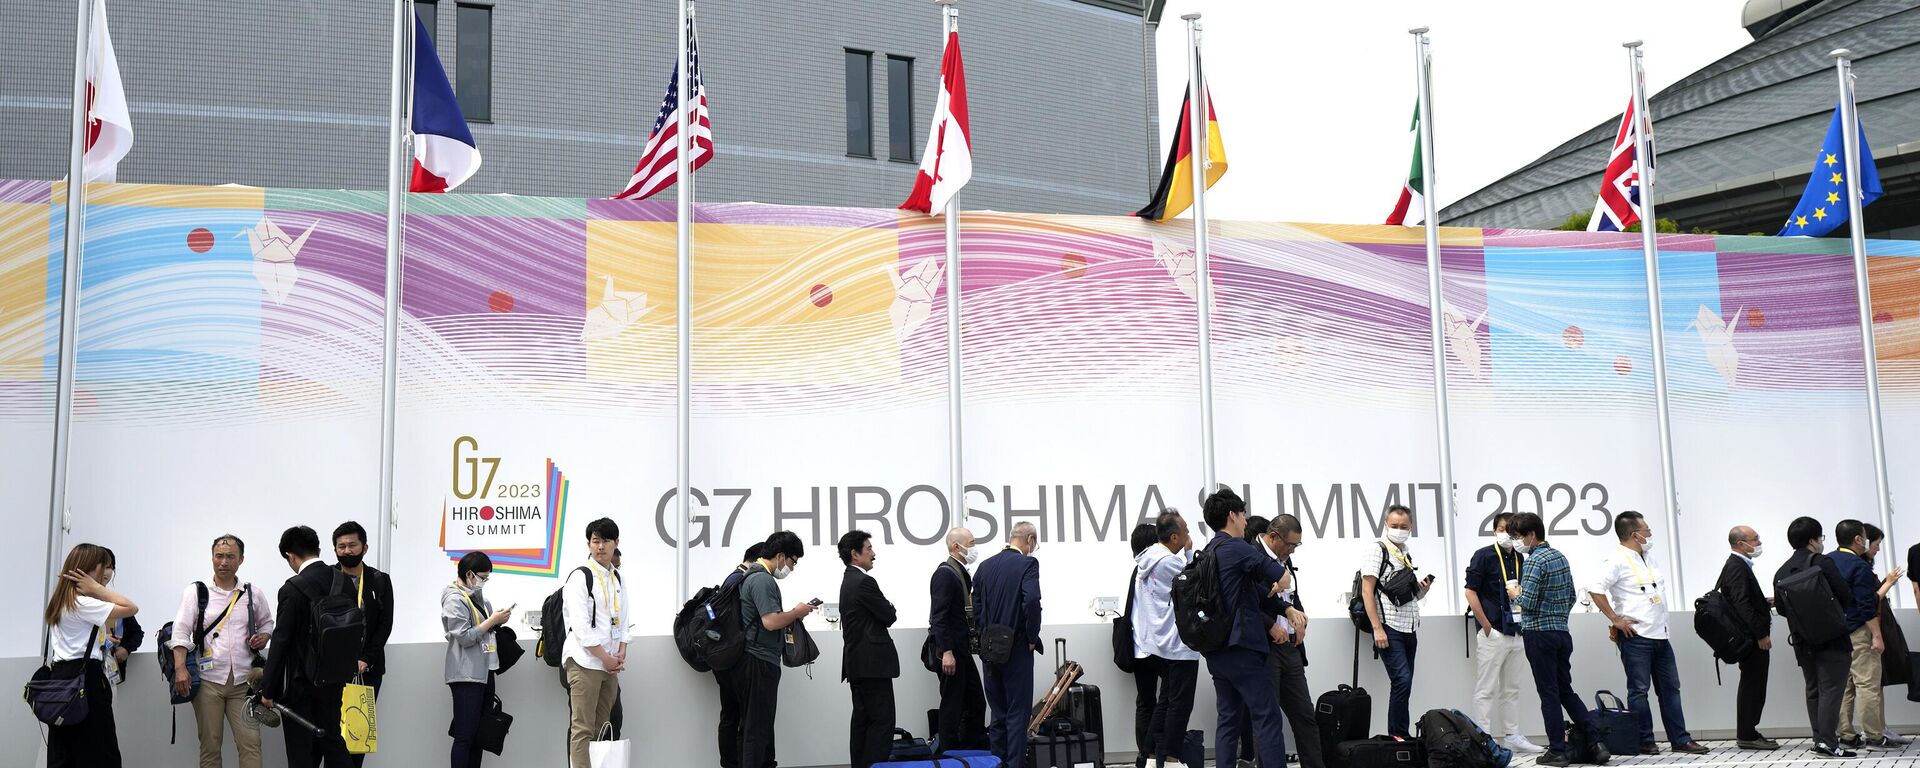 Jornalistas fazem fila para entrar no Centro Internacional de Imprensa antes das reuniões do Grupo dos Sete (G7), 18 de maio de 2023, Hiroshima, Japão. - Sputnik Brasil, 1920, 18.05.2023